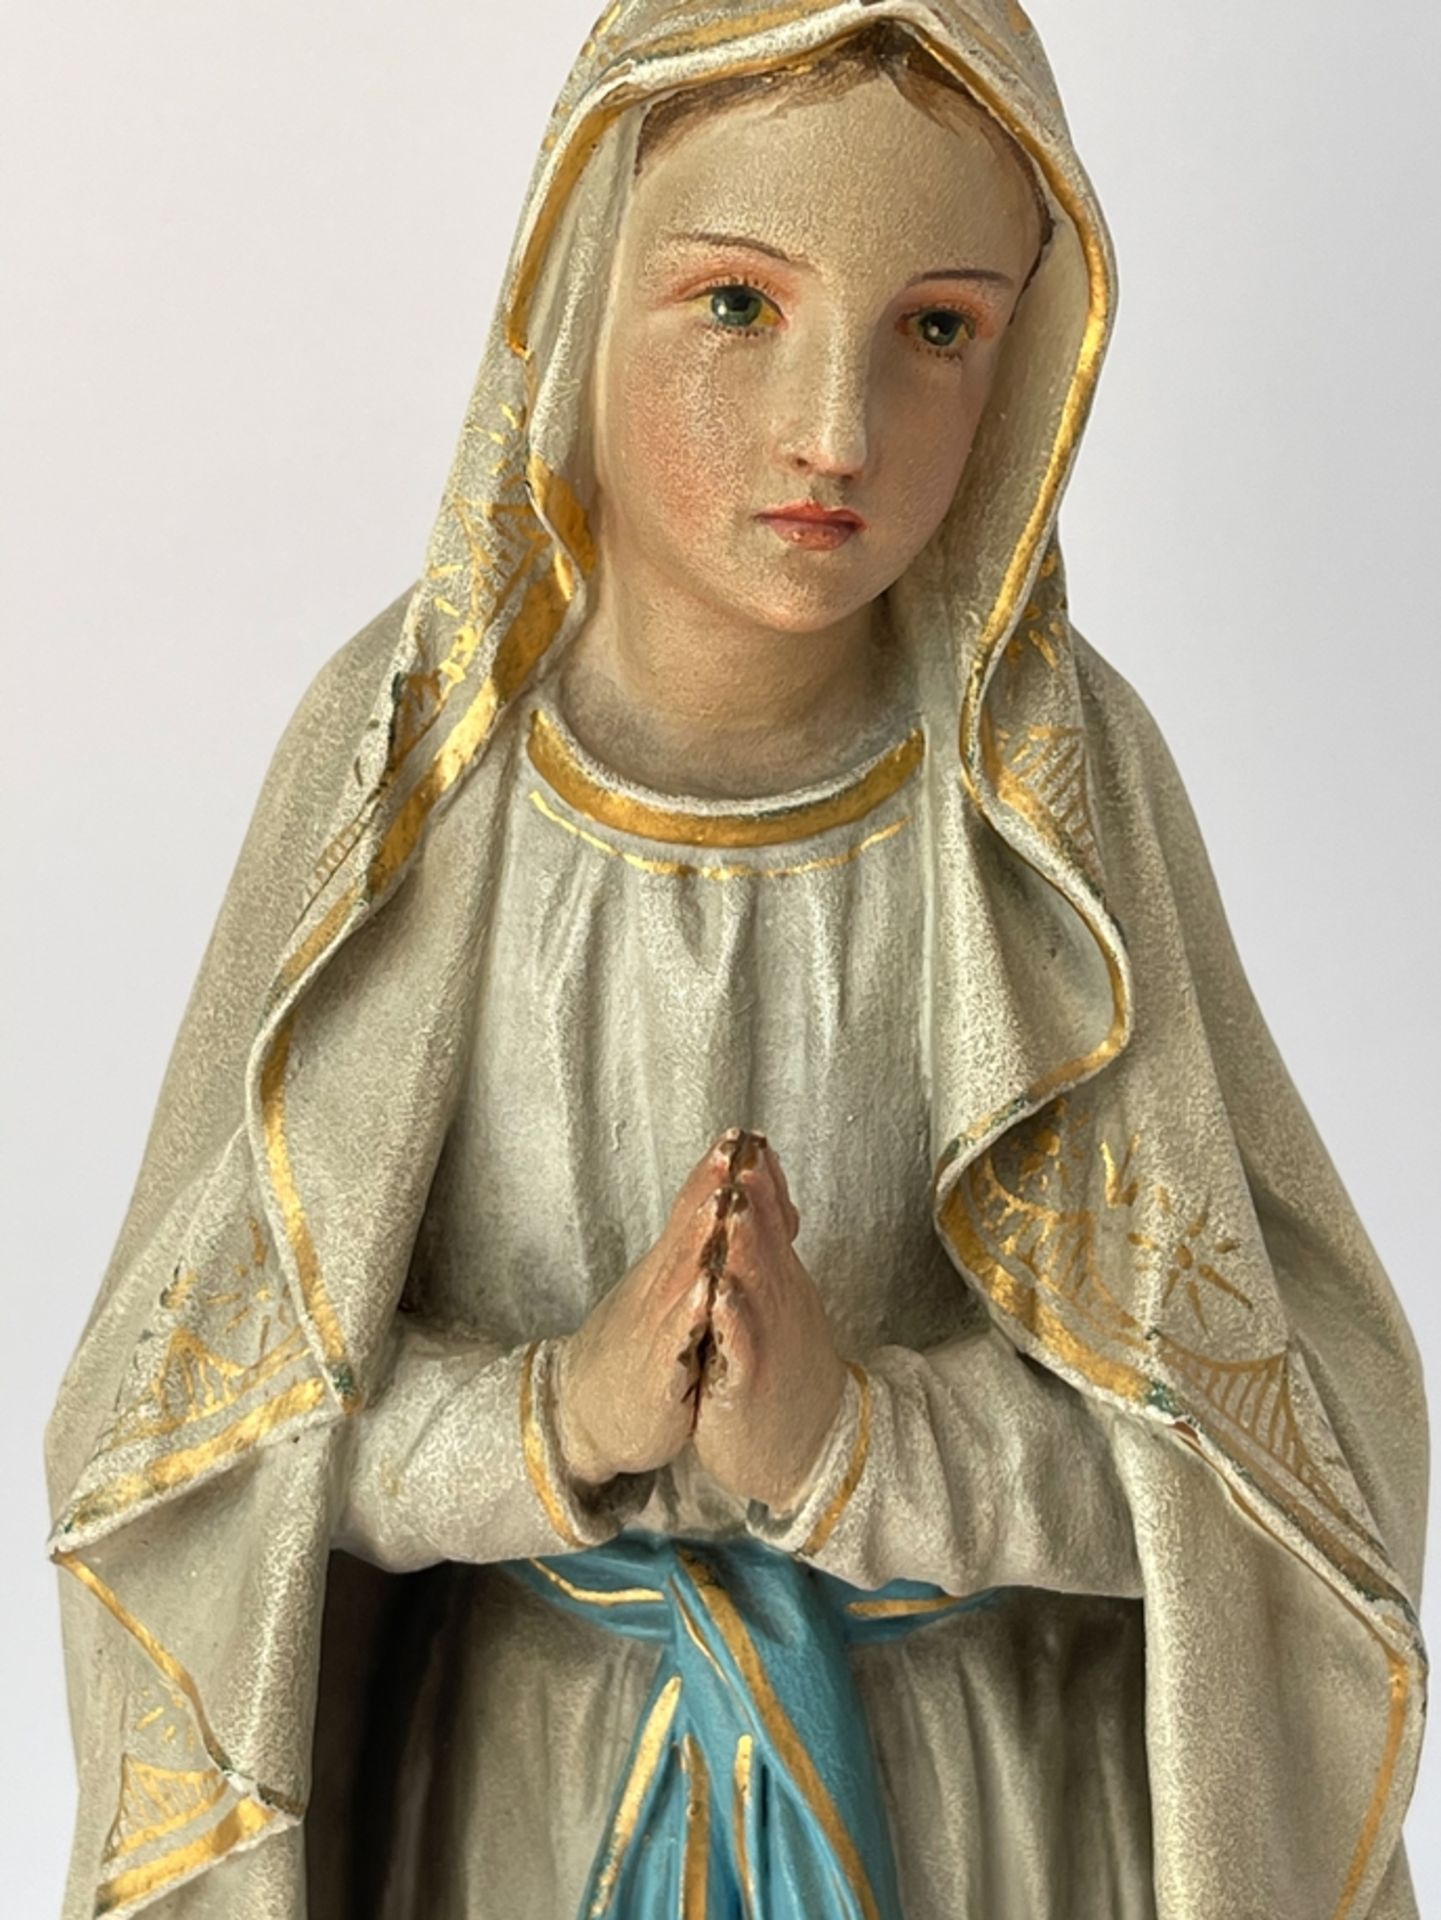 Neogotische/Nazarena Lourdes Madonna  - Bild 4 aus 10